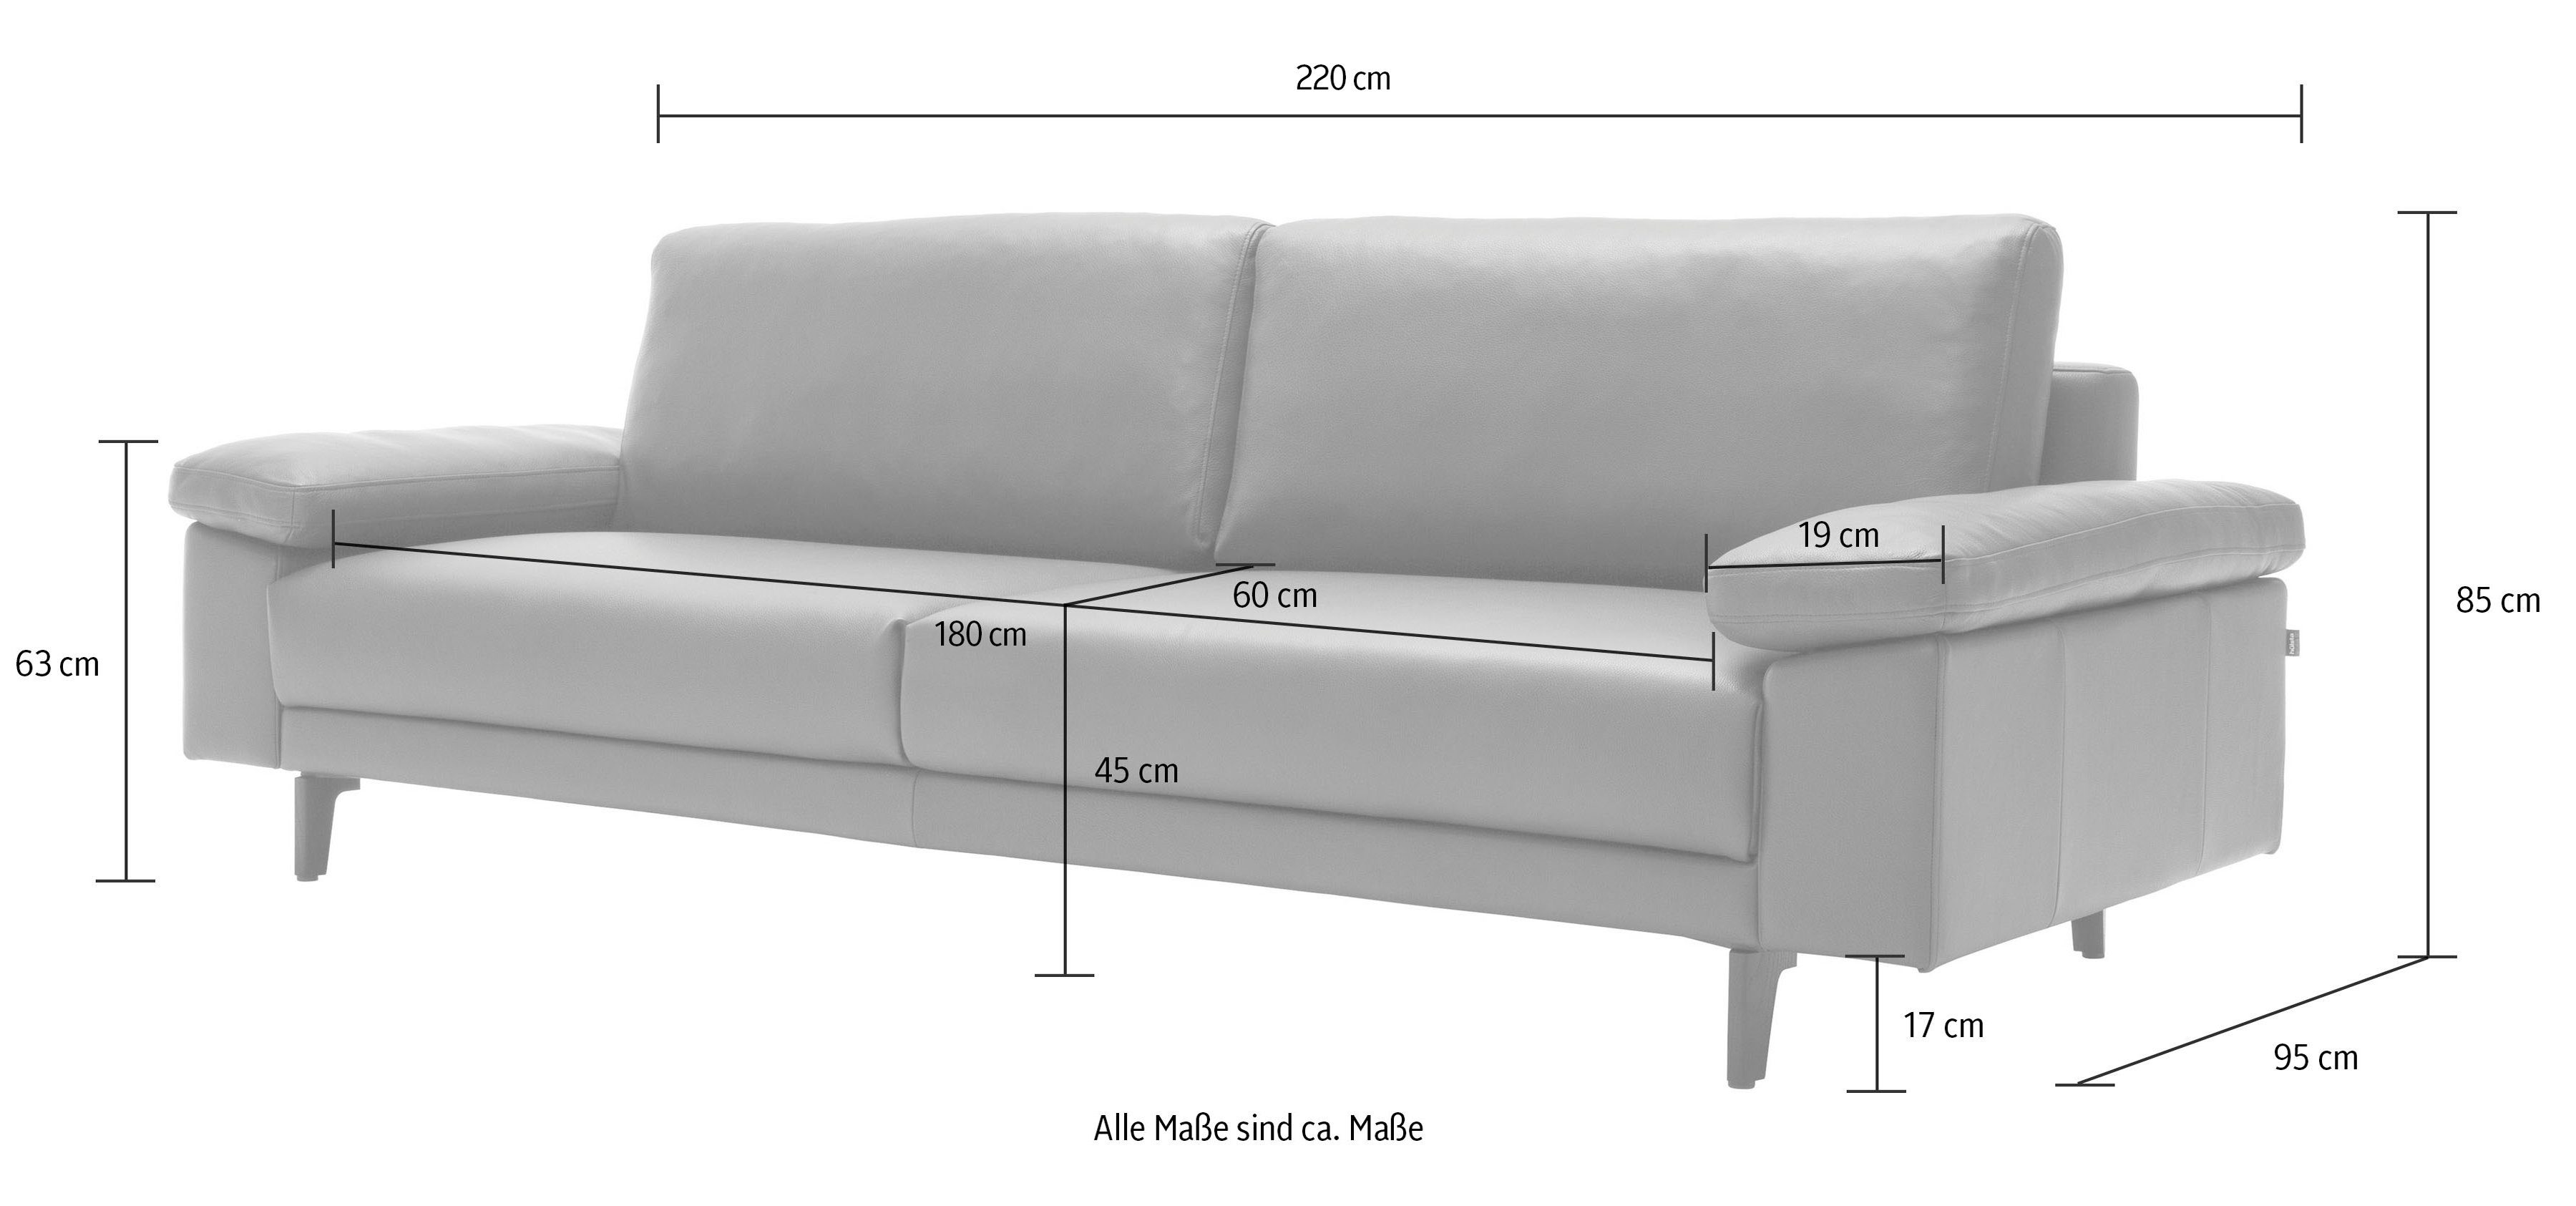 sofa 3-Sitzer hs.450 hülsta